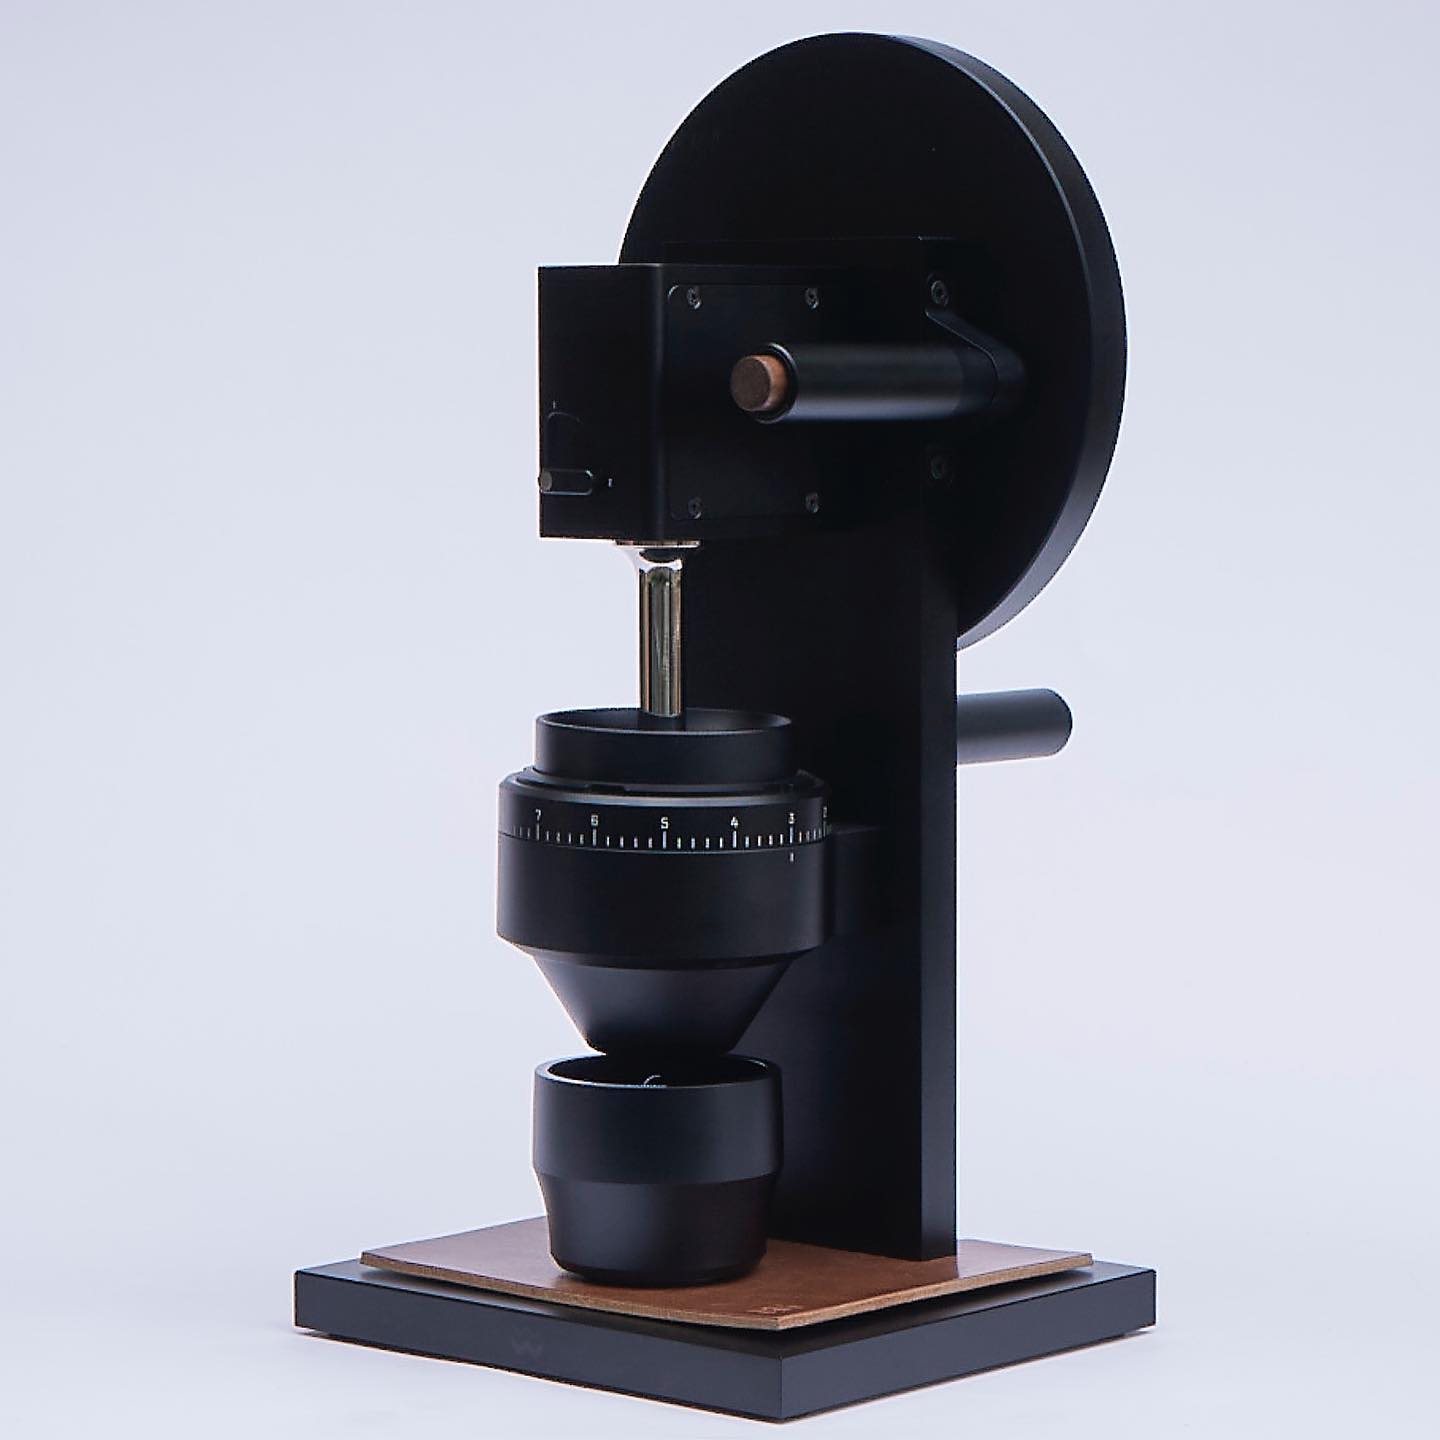 high-end coffee grinder